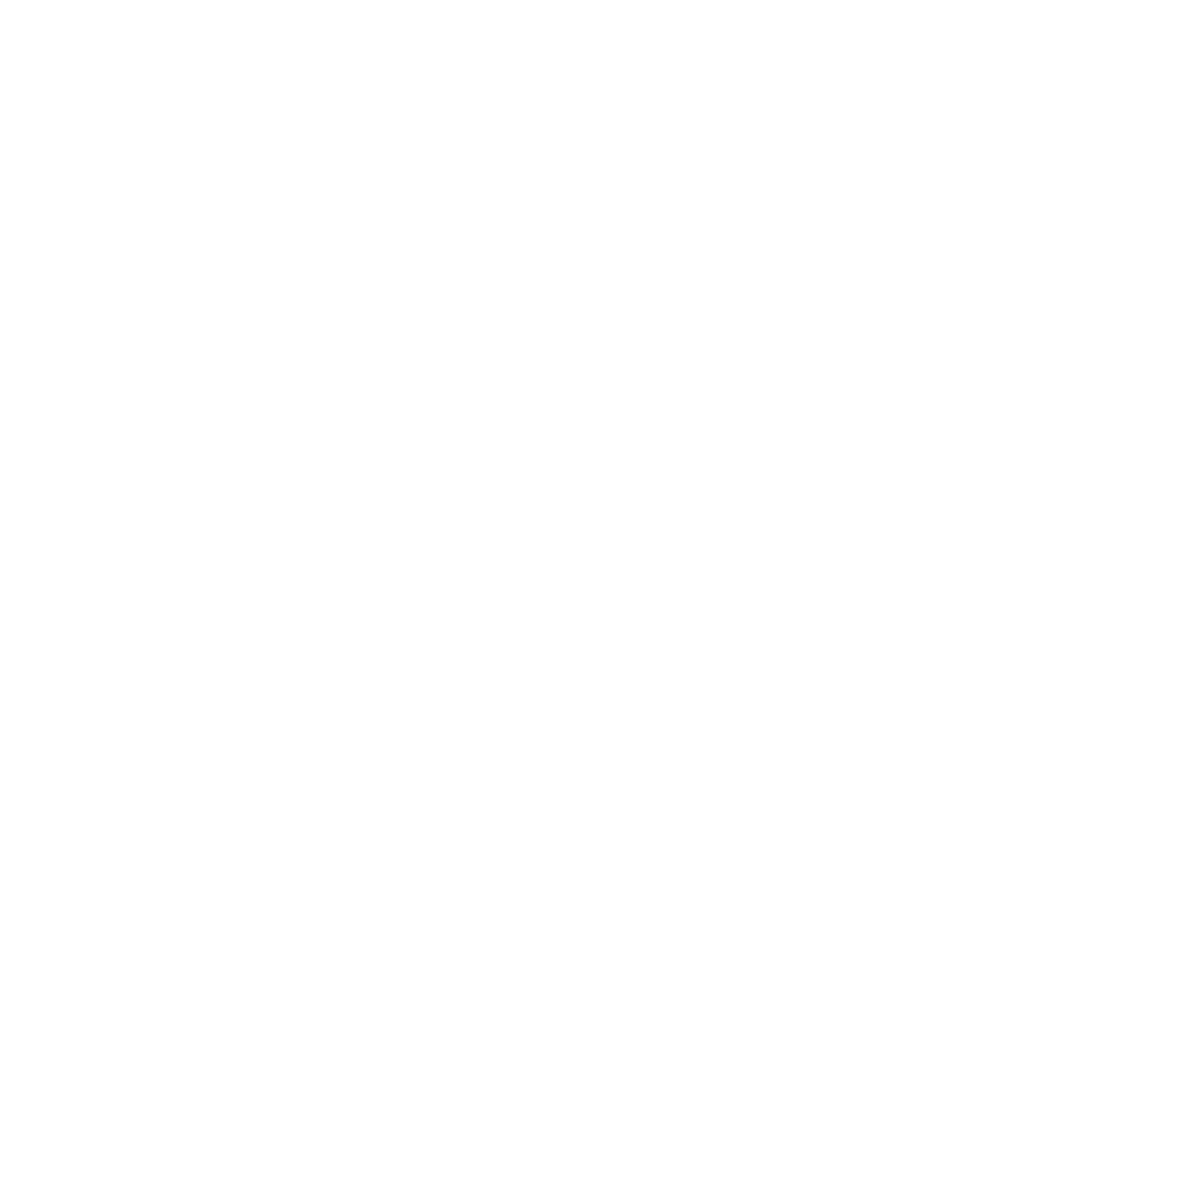 Tim's Paintless Dent-logos_white